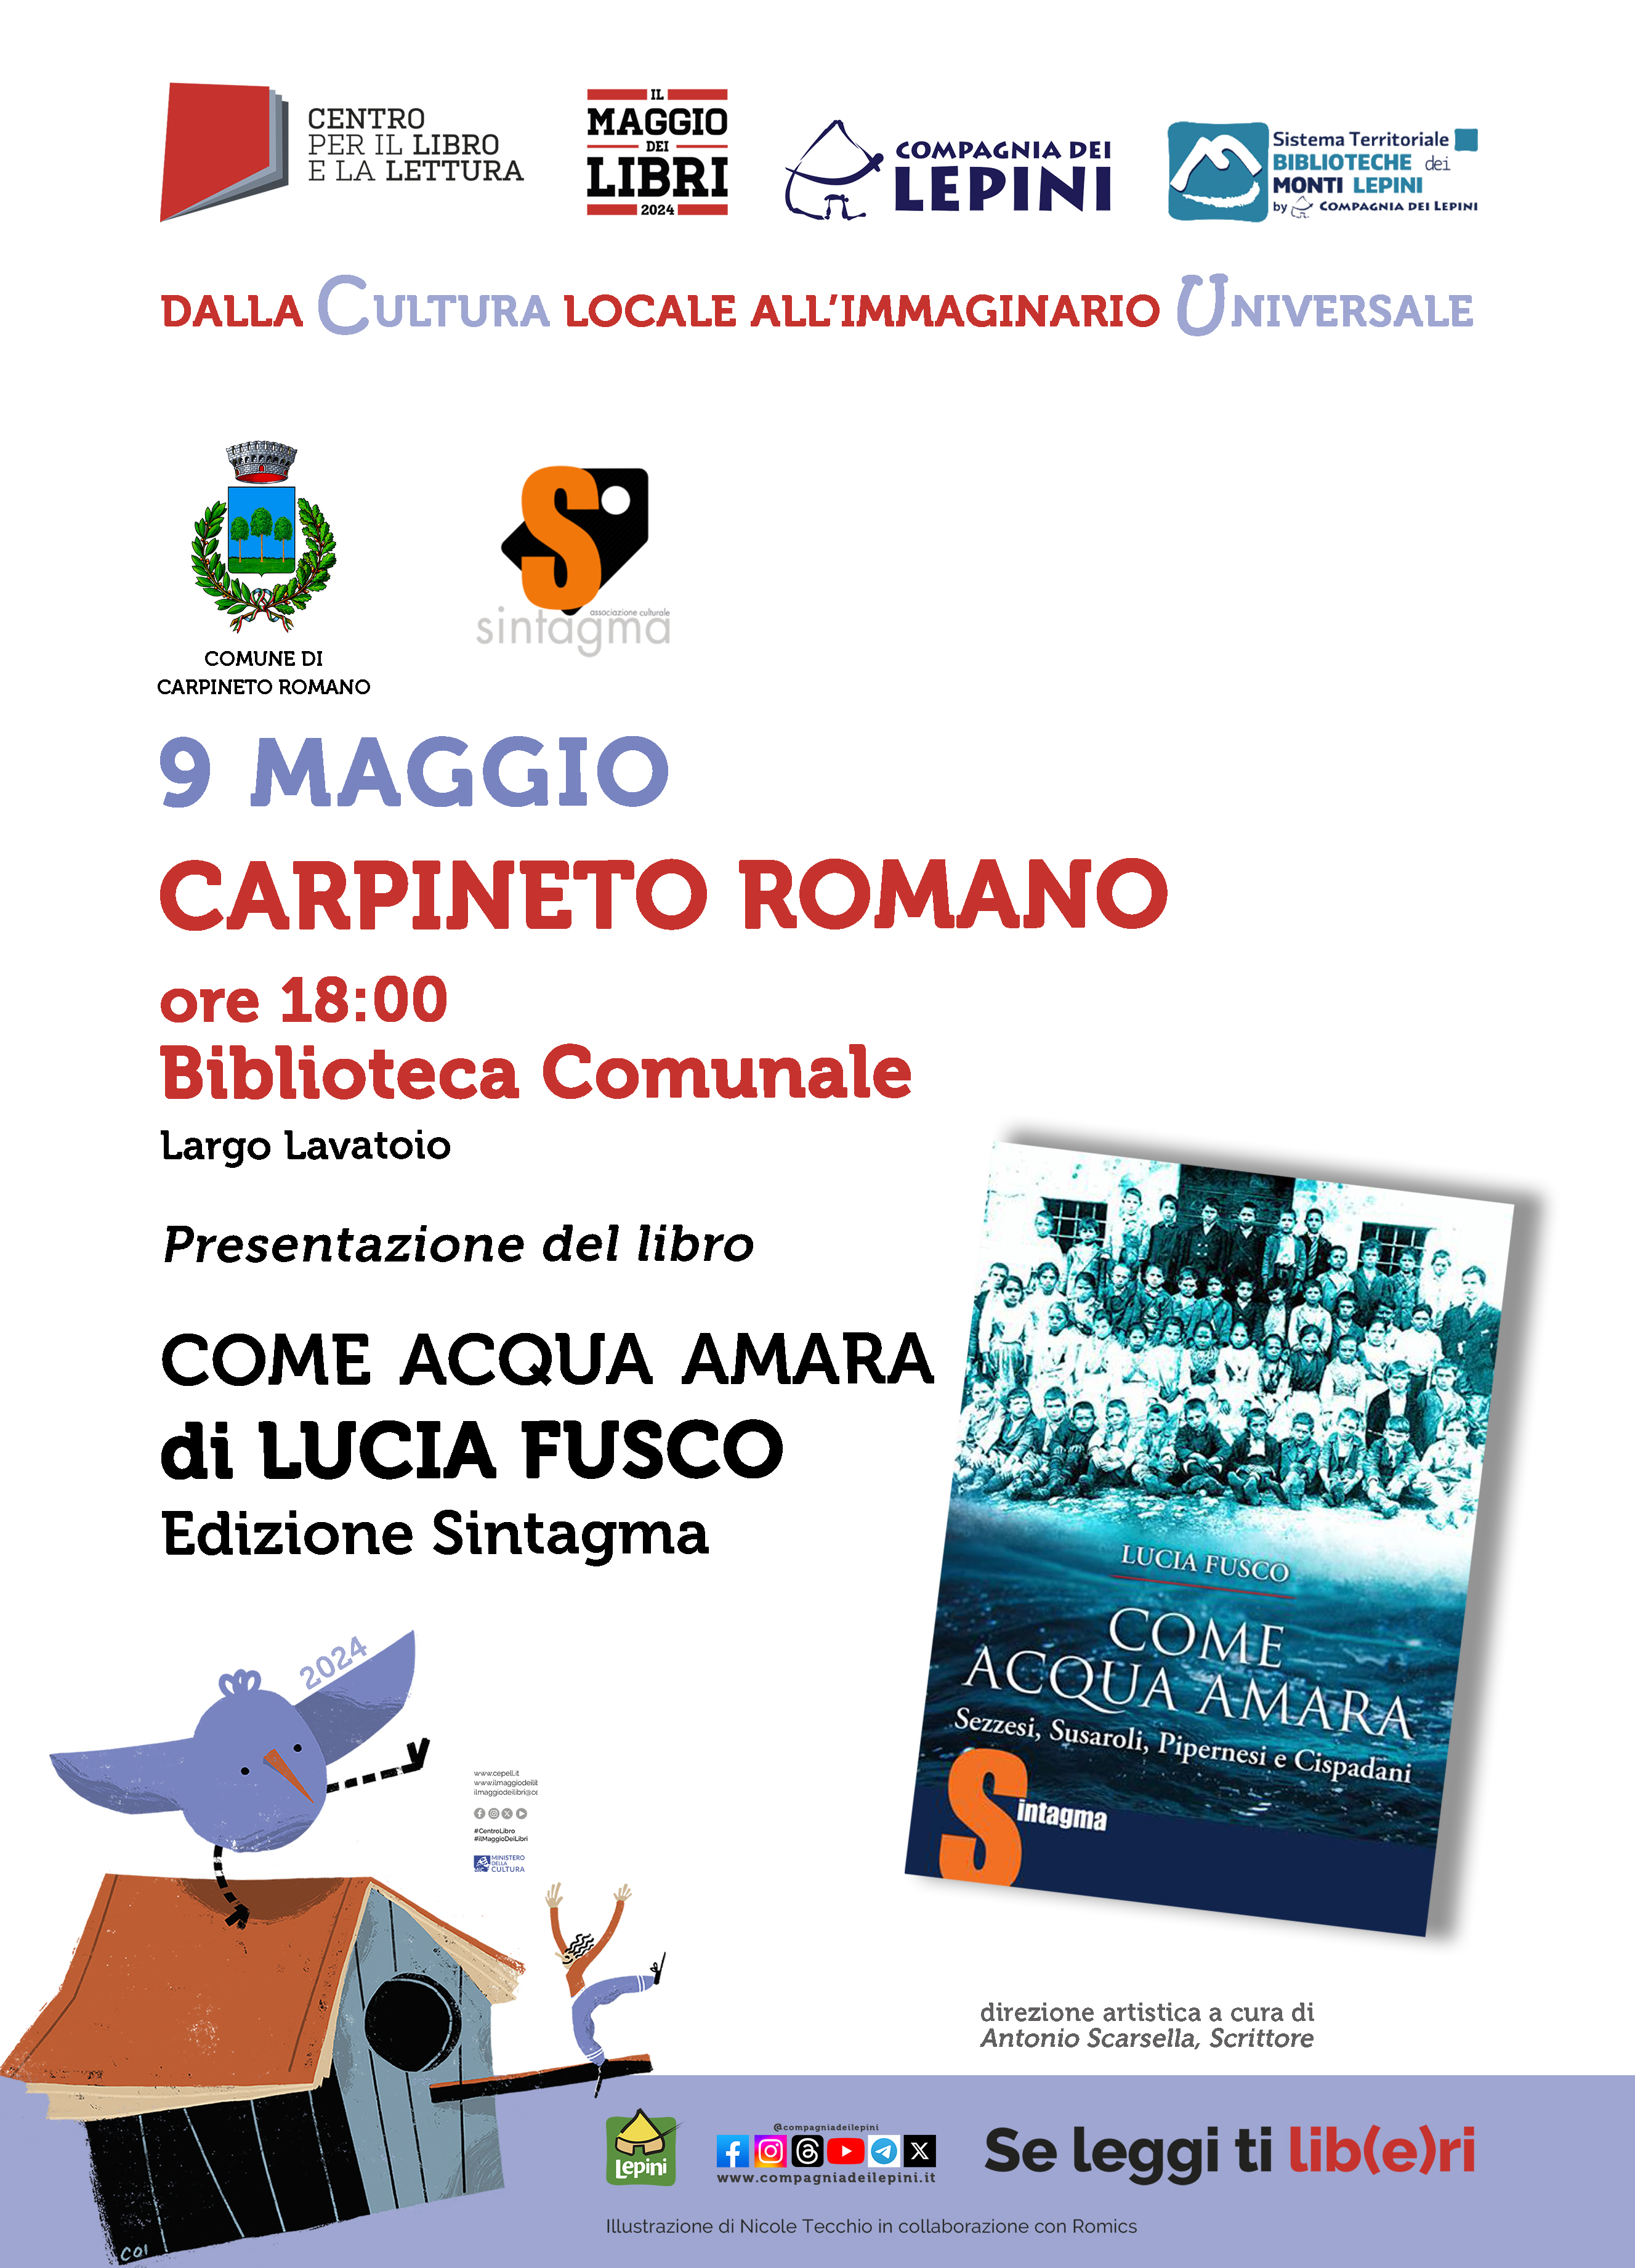 Il Maggio dei Libri a Carpineto Romano: Presentazione del libro "Come Acqua Amara" di Lucia Fusco @ Bilbioteca Comunale